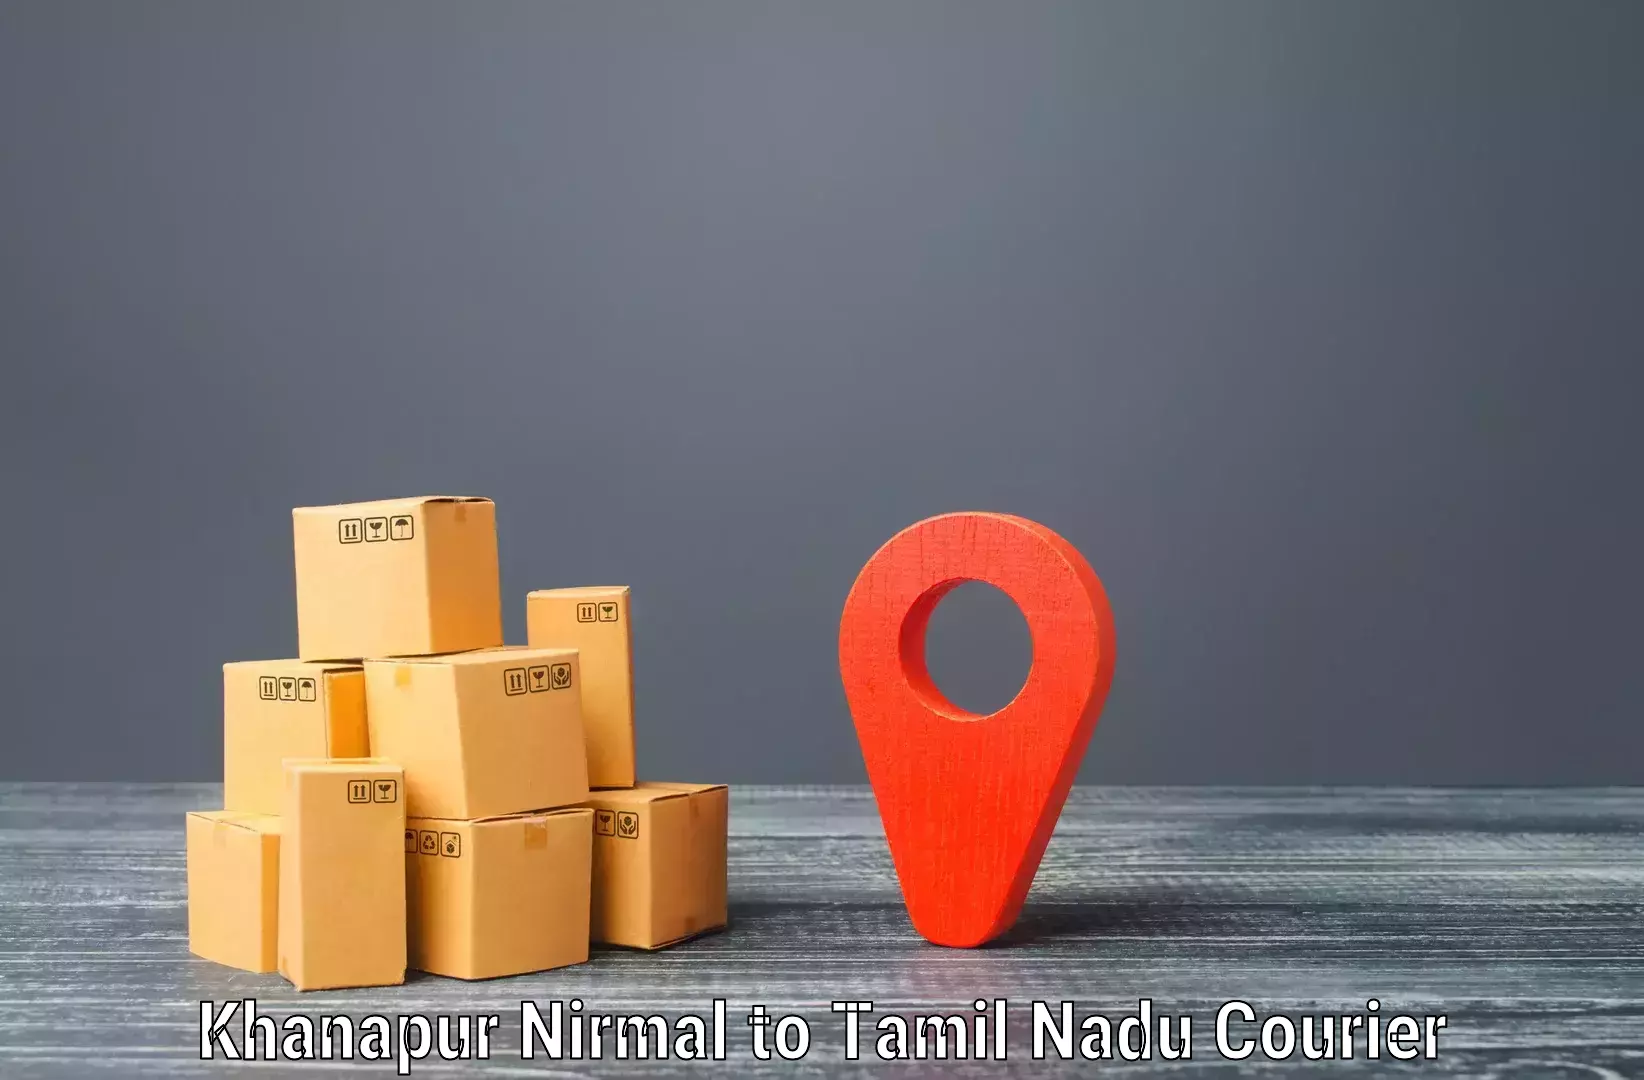 Holiday shipping services Khanapur Nirmal to Ranipet